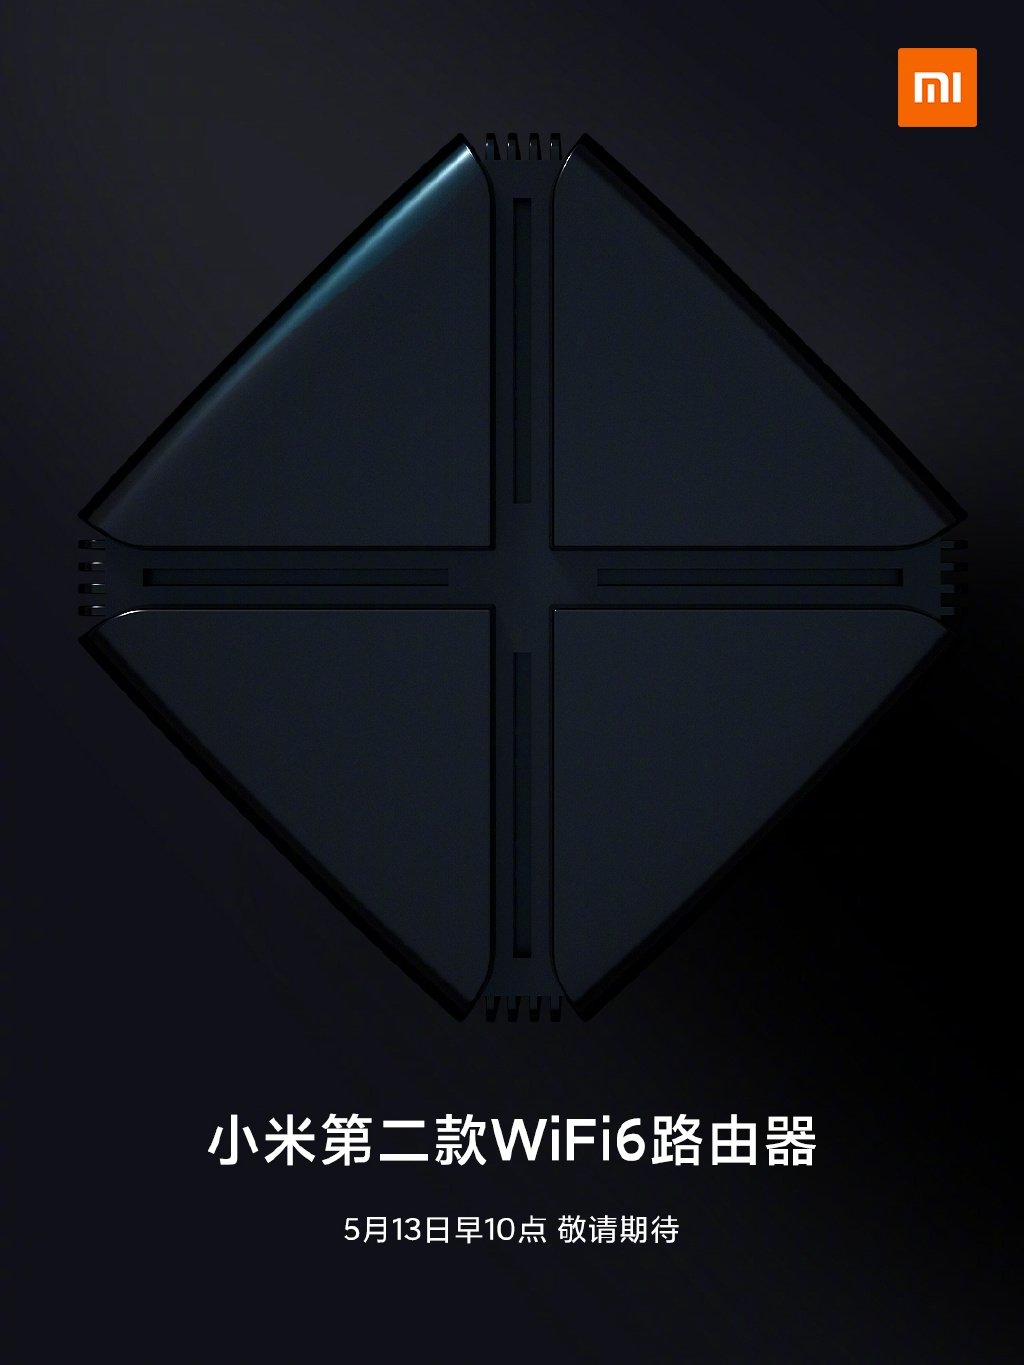 Xiaomi Wi-Fi 6 Router Launch Date